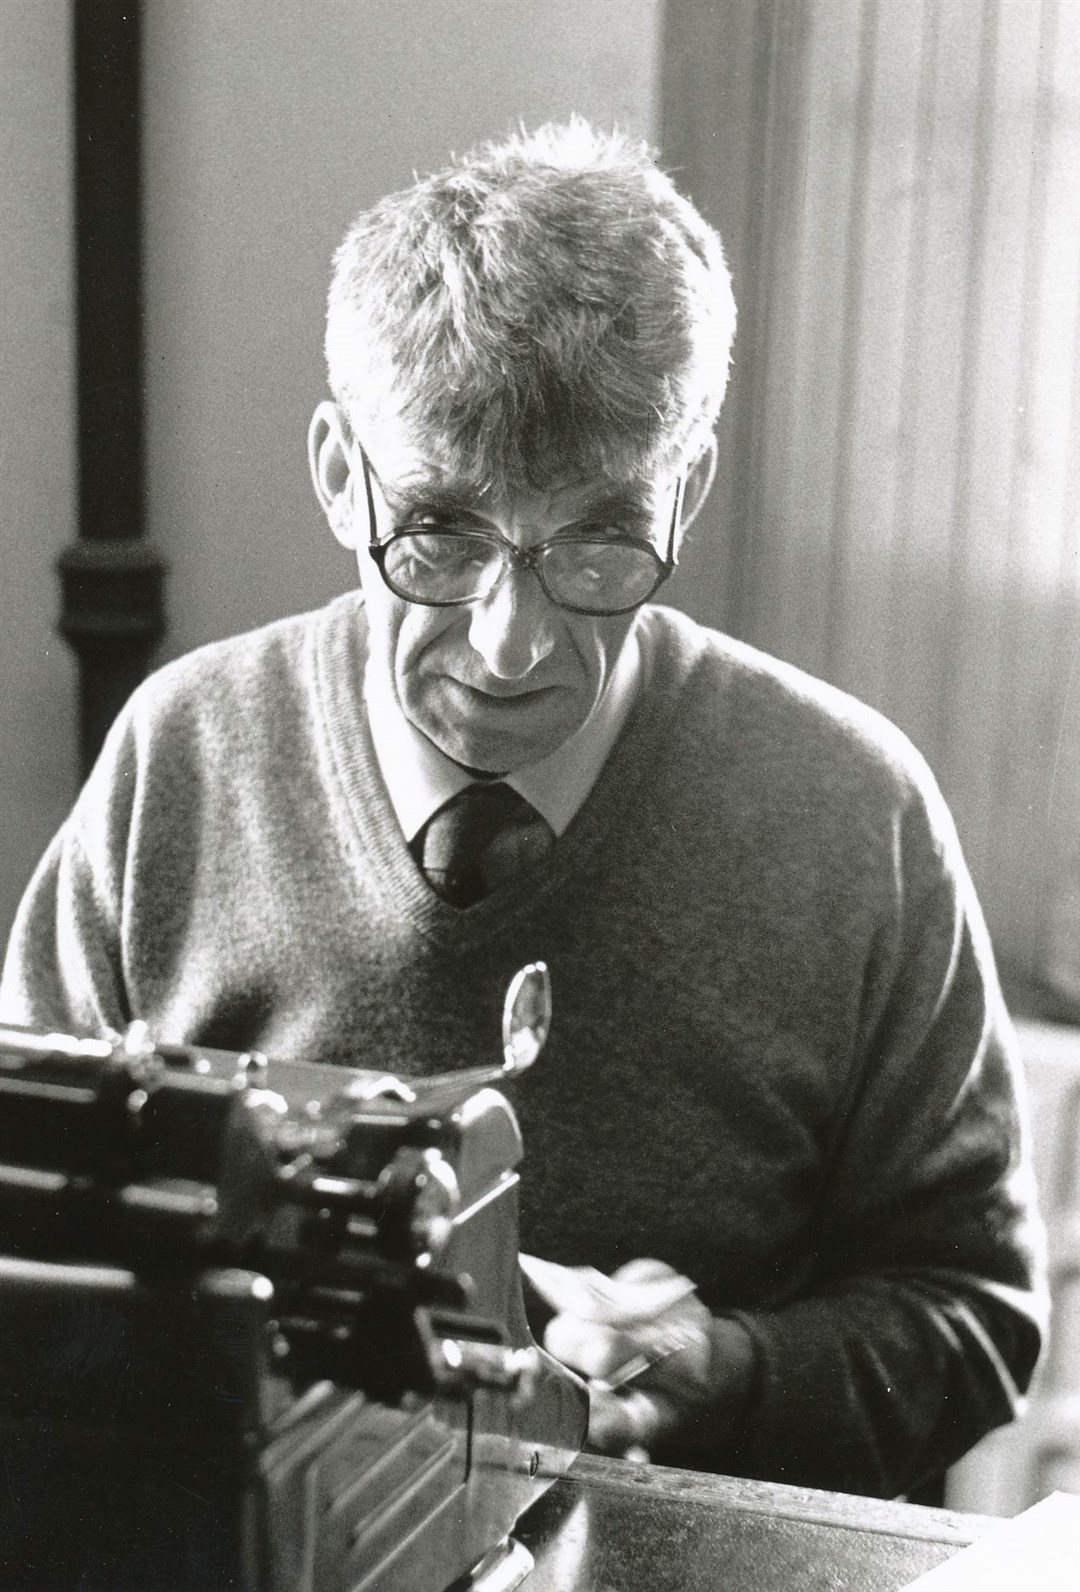 David Watt as many remember him, behind a typewriter.